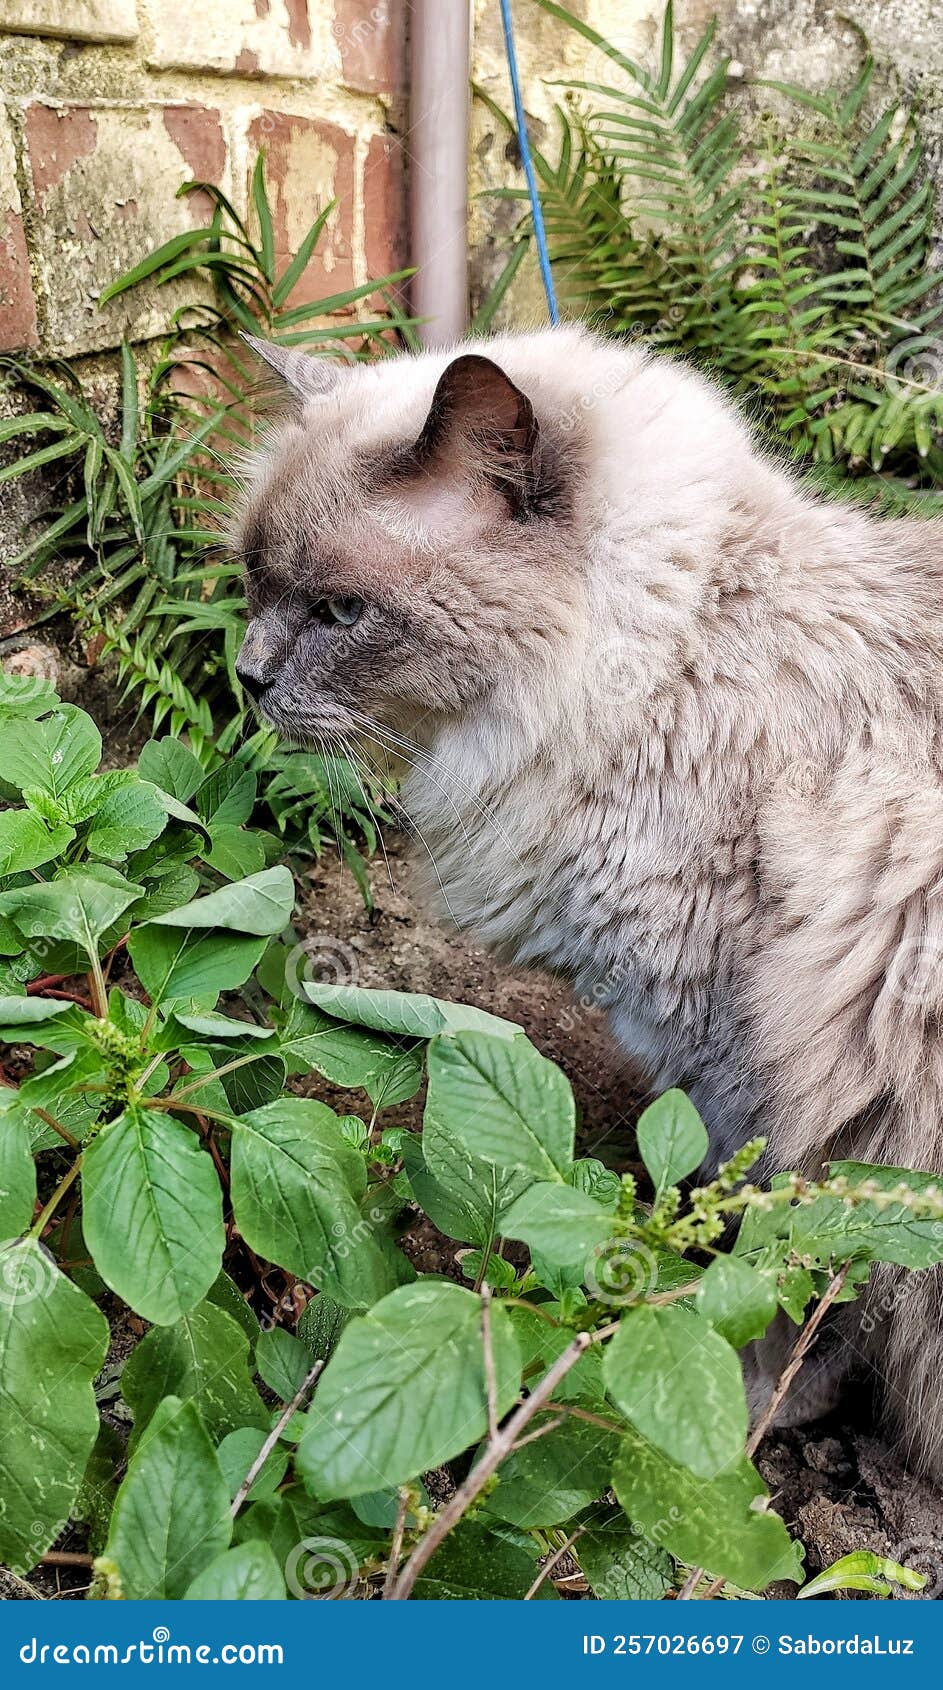 a beautiful cat among the foliage.